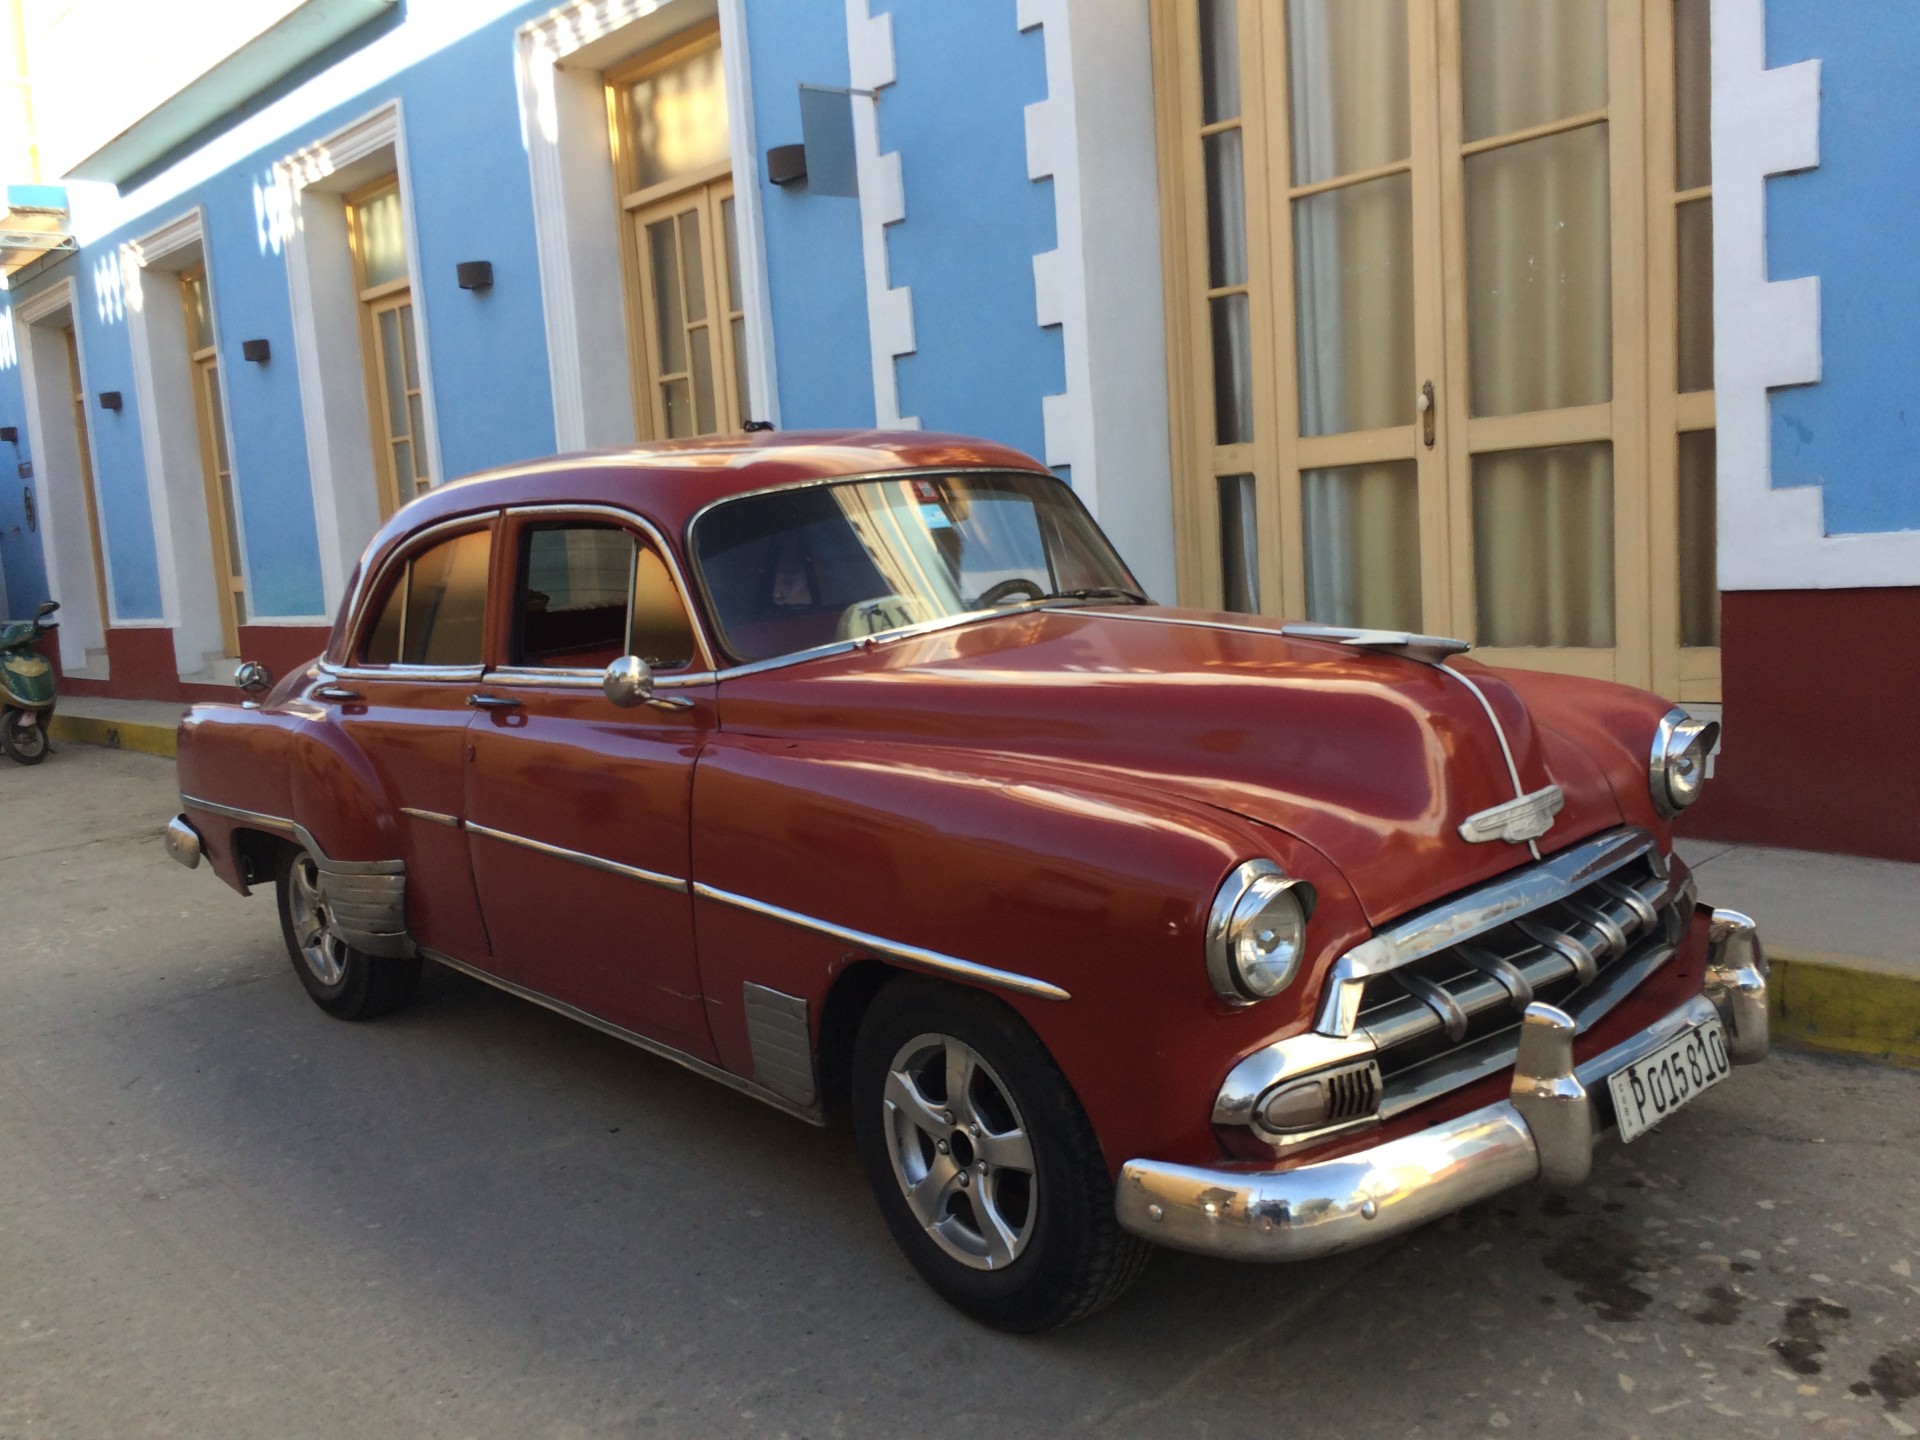 images/image/2016/Cuba/Cuba__23.jpg